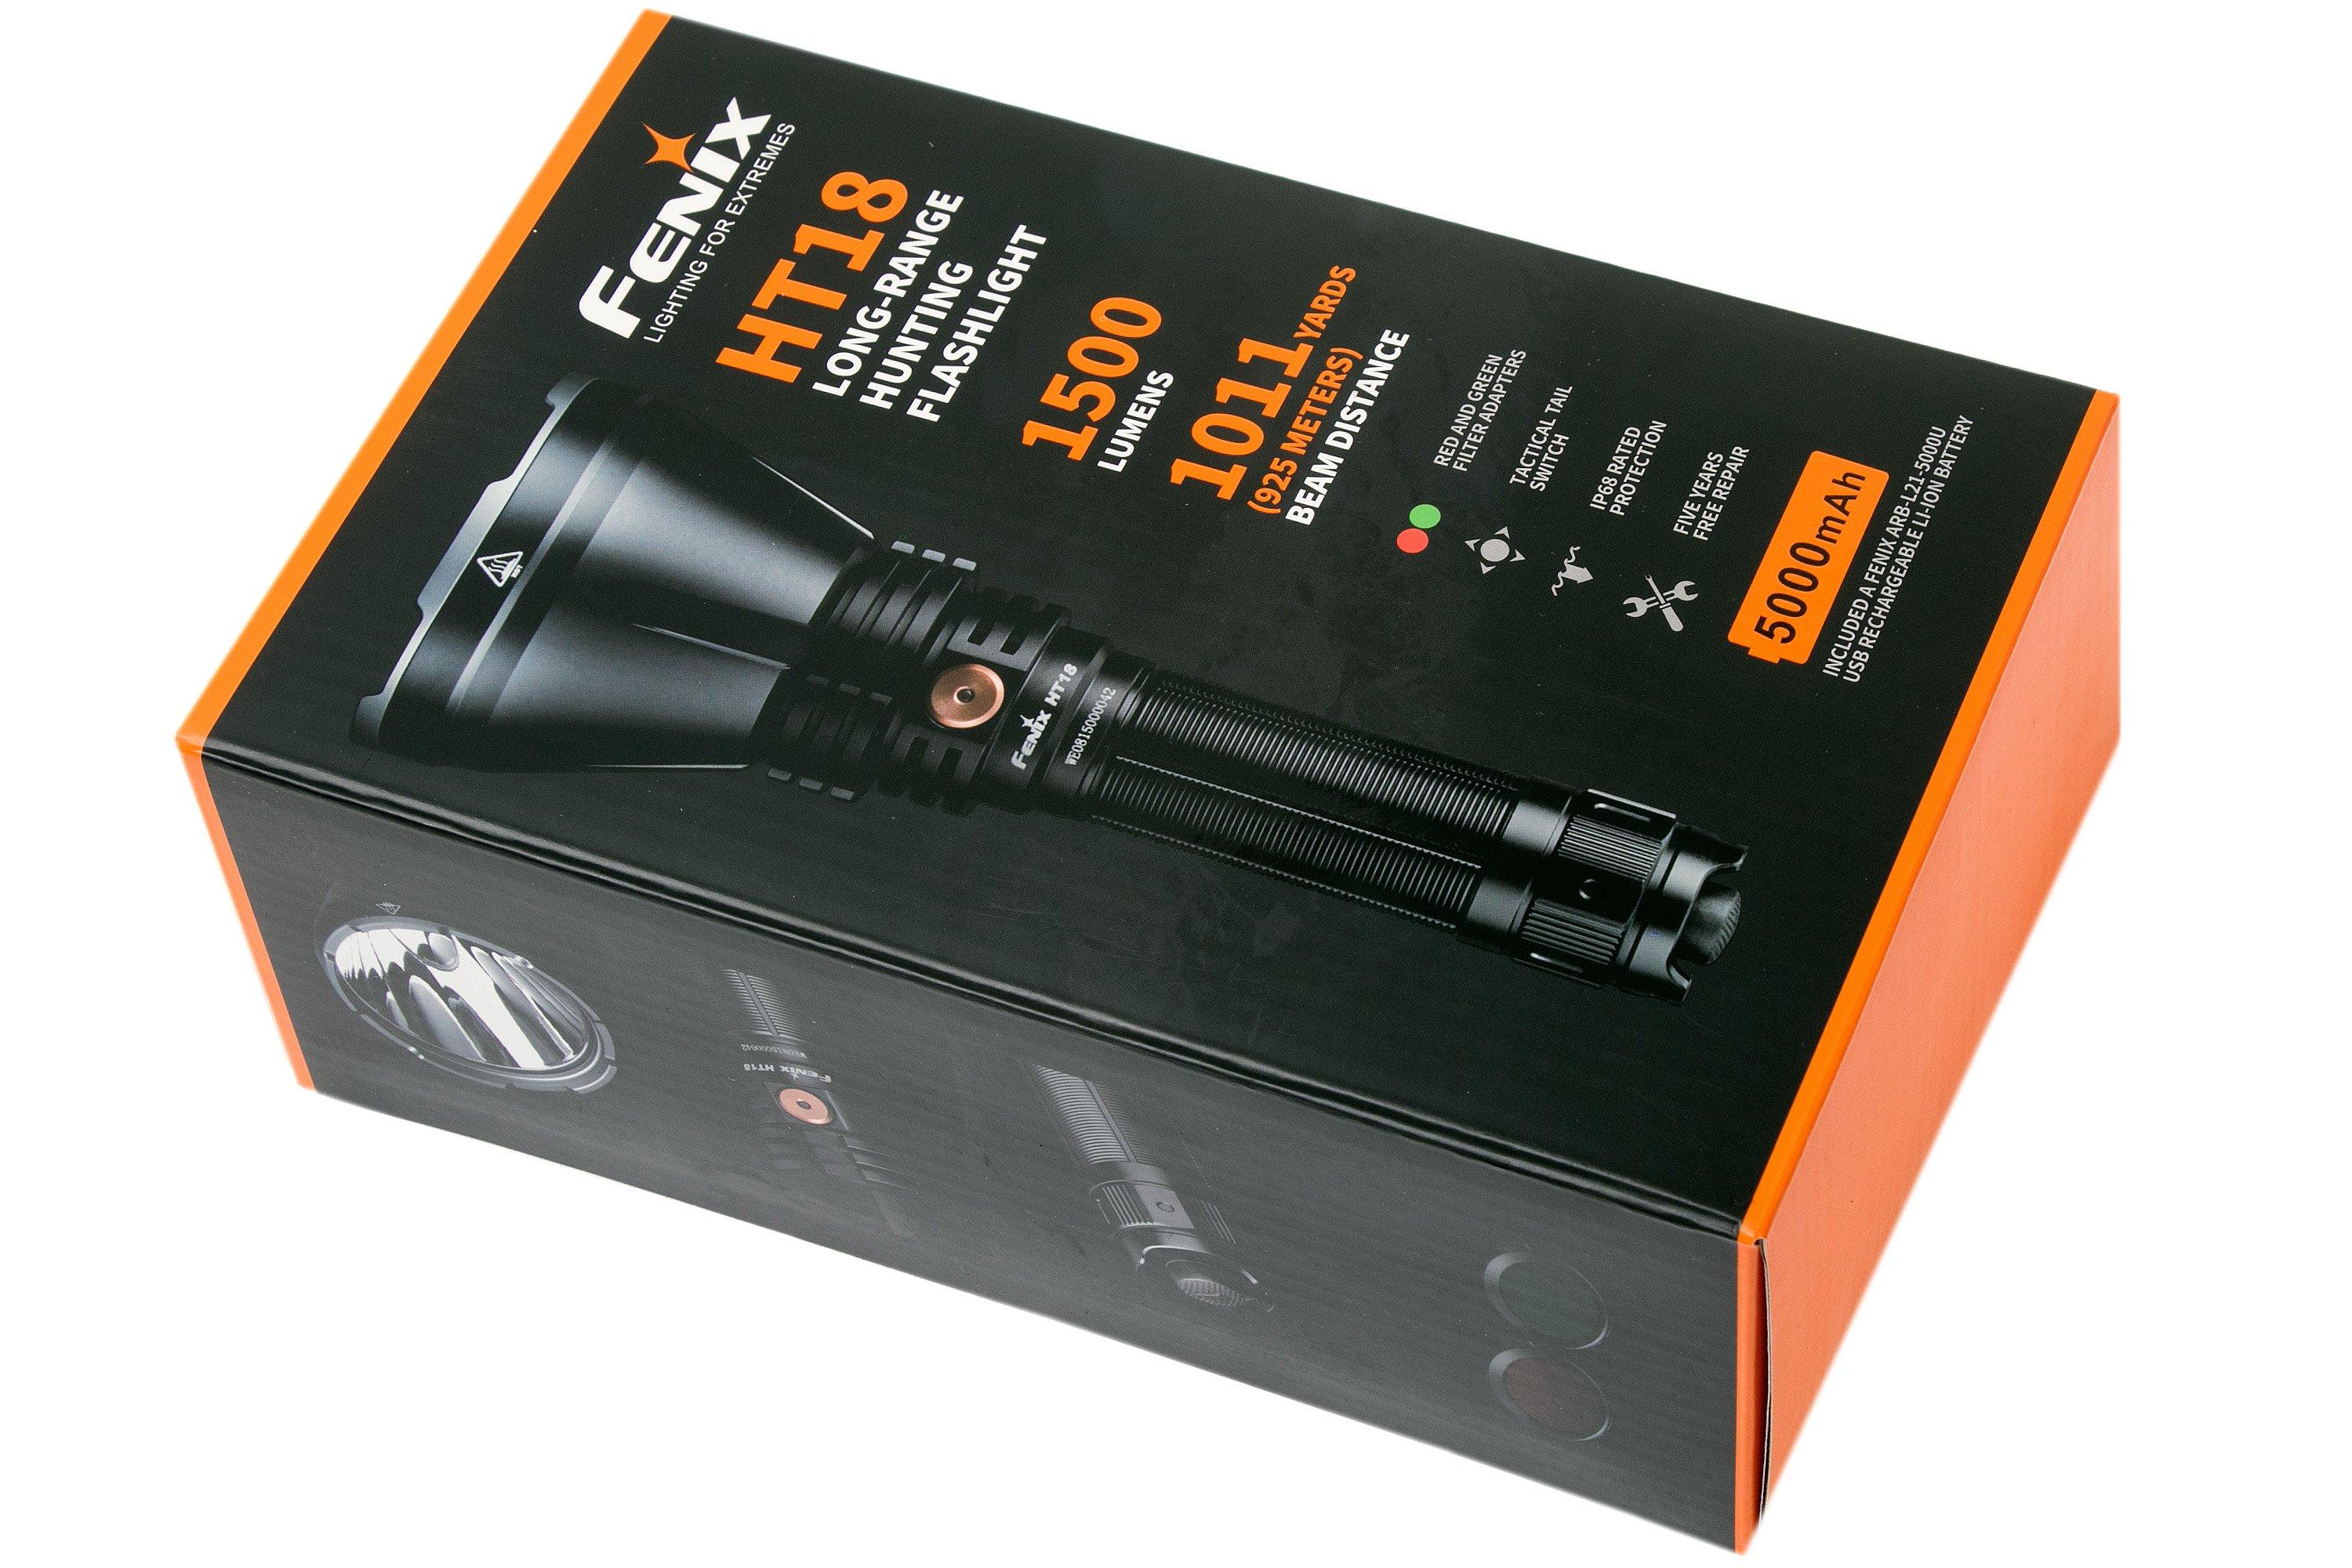 Lampe Torche Fenix HT18R - 2800 Lumens - rechargeable longue portée pour la  chasse